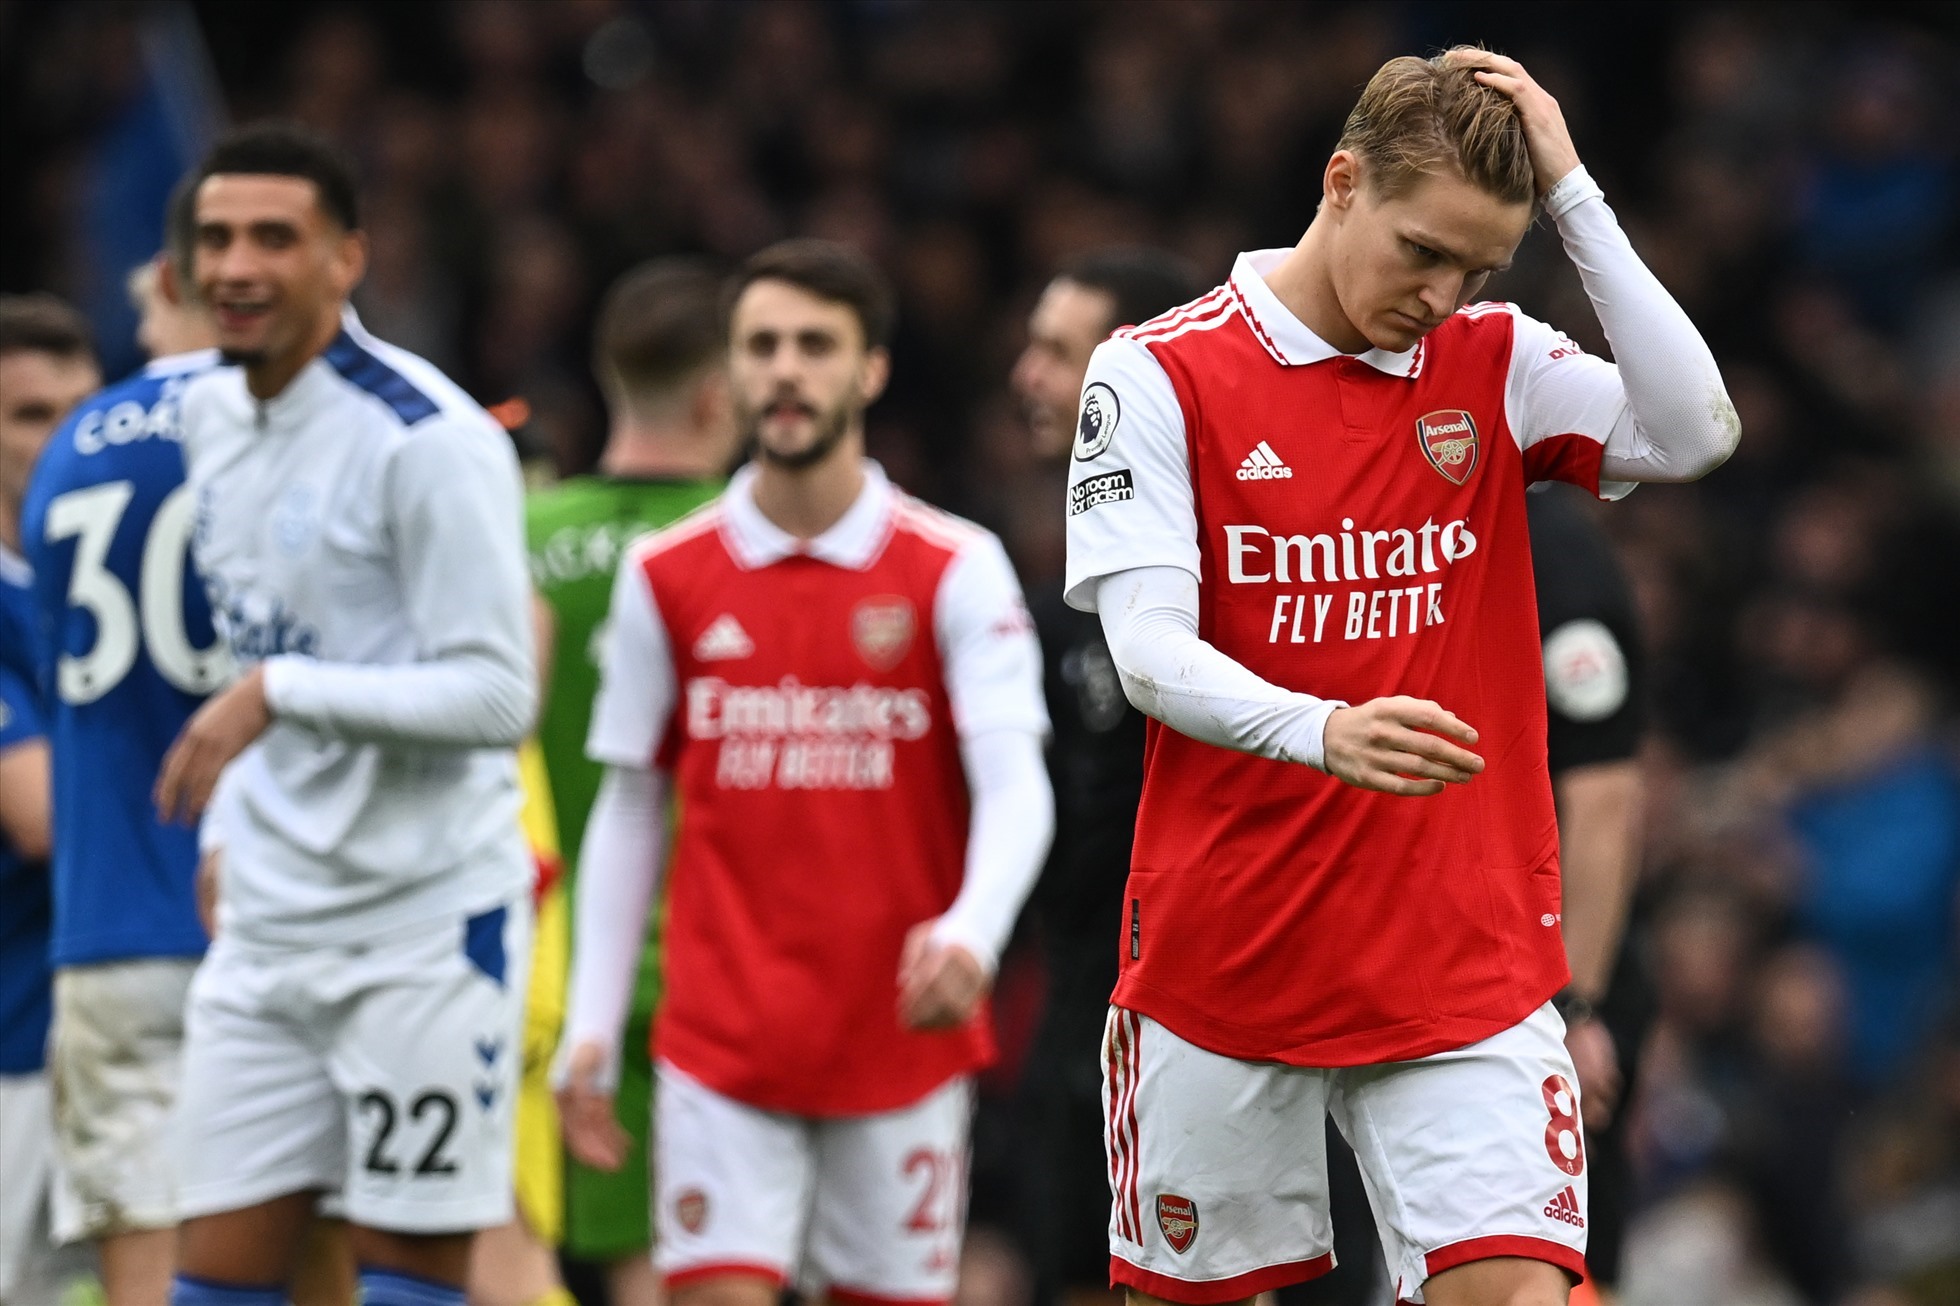 Arsenal trải qua một mùa giải đáng tiếc và cần nhiều hơn sự tăng cường trong hè này. Ảnh: AFP